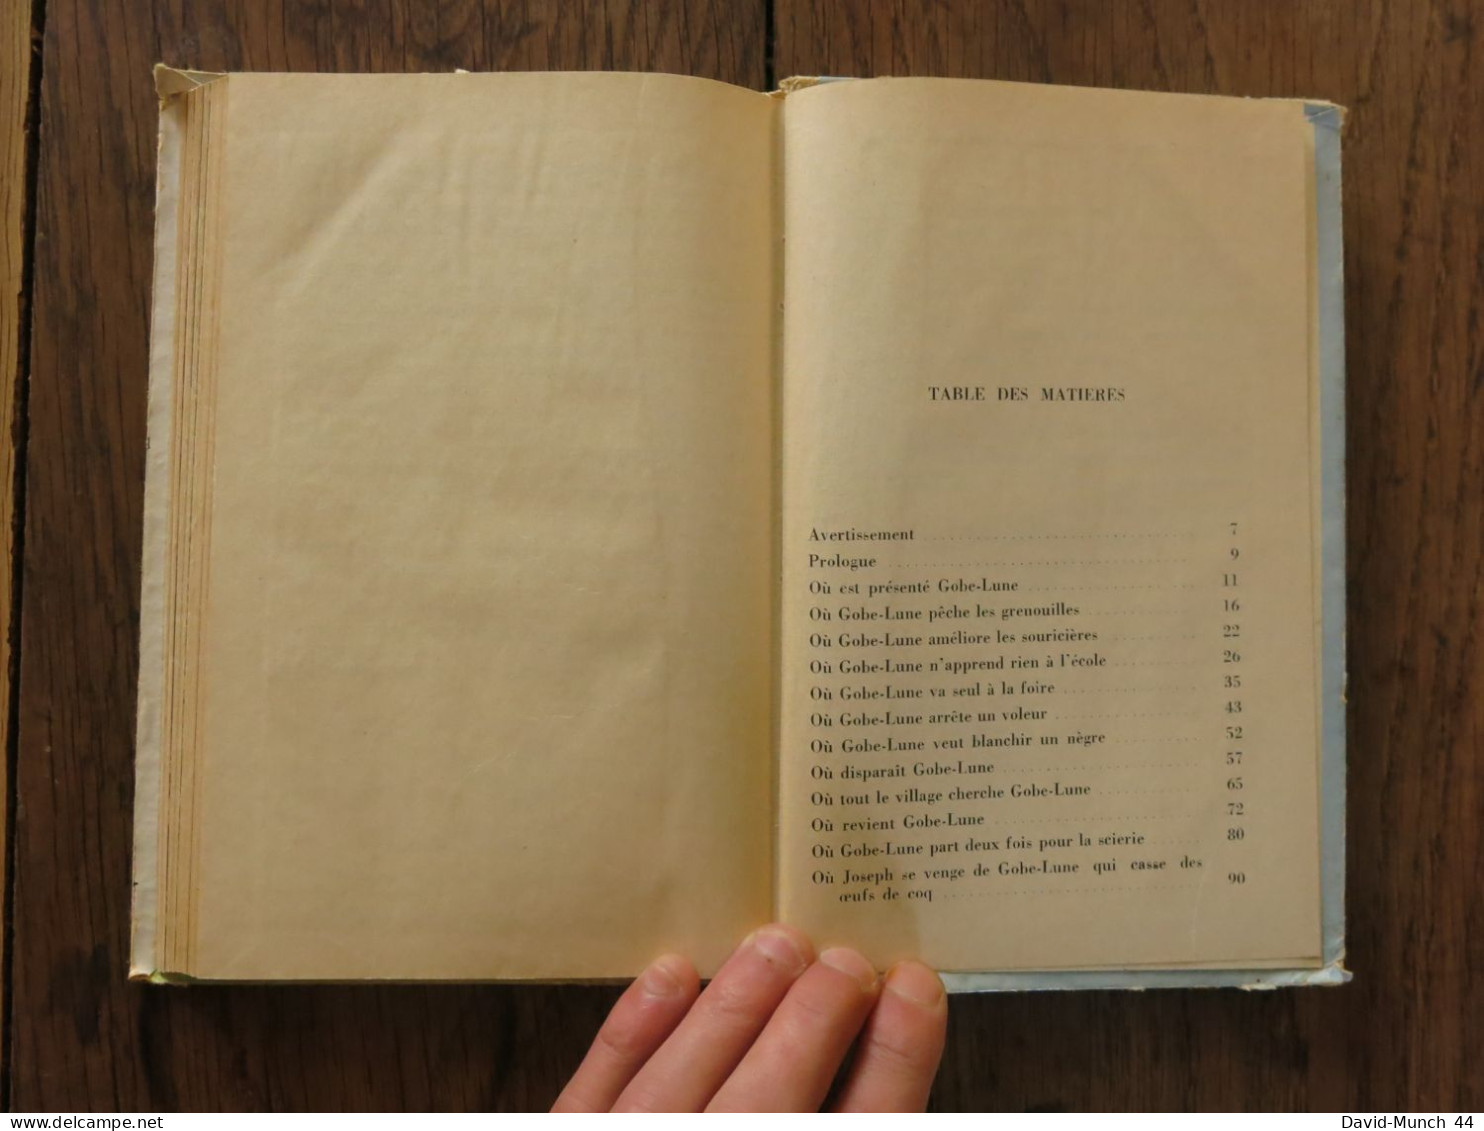 Gobe-Lune, lecture suivie: cours moyen (1re et 2e année) de André Baruc. Magnard. 1953